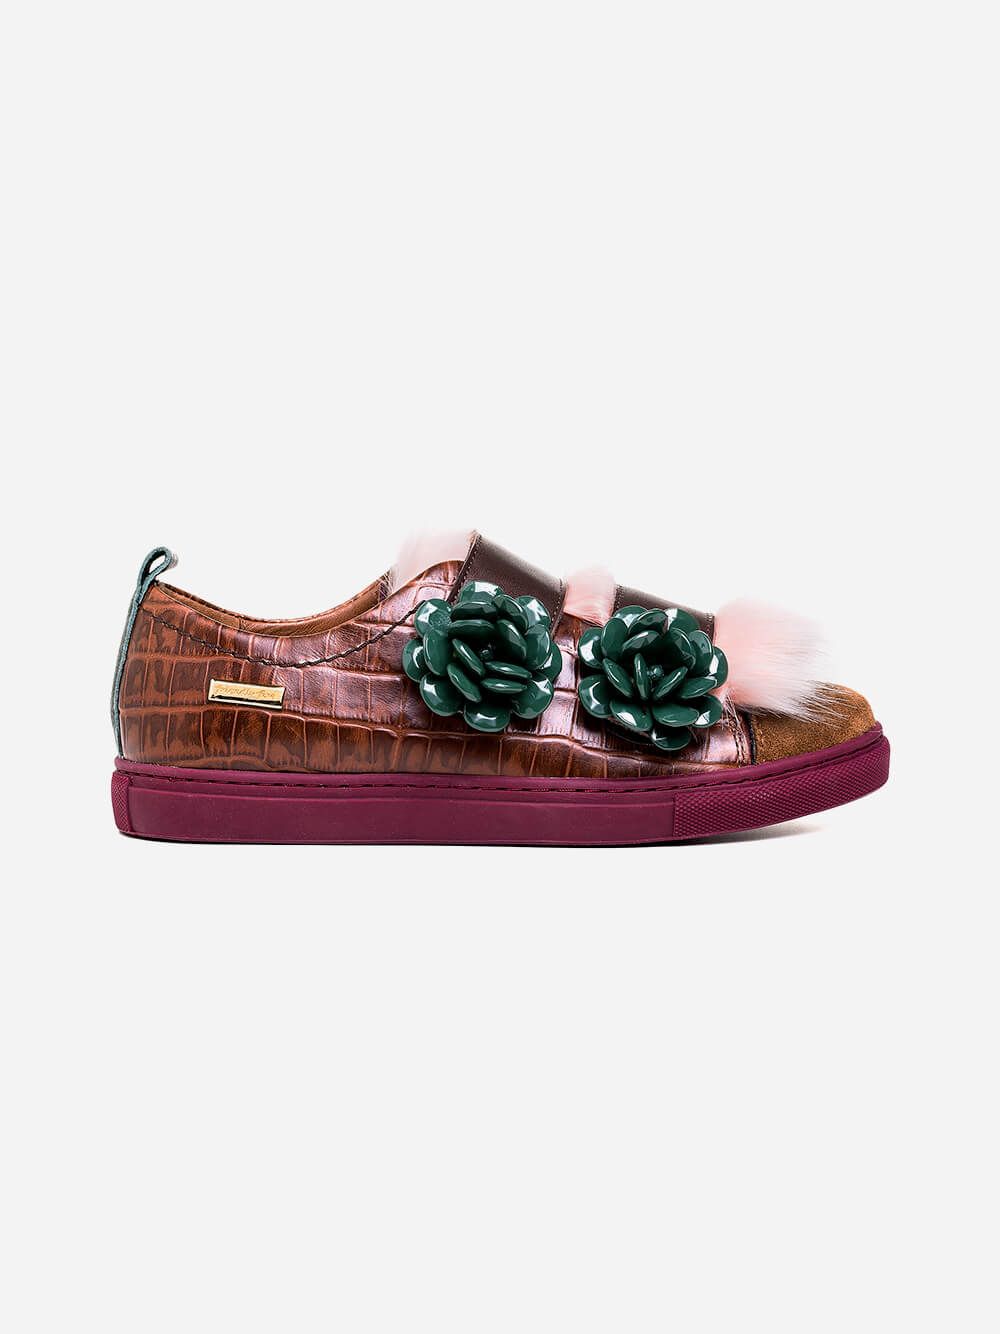 Gala Green Rose Sneakers | Friendly Fire